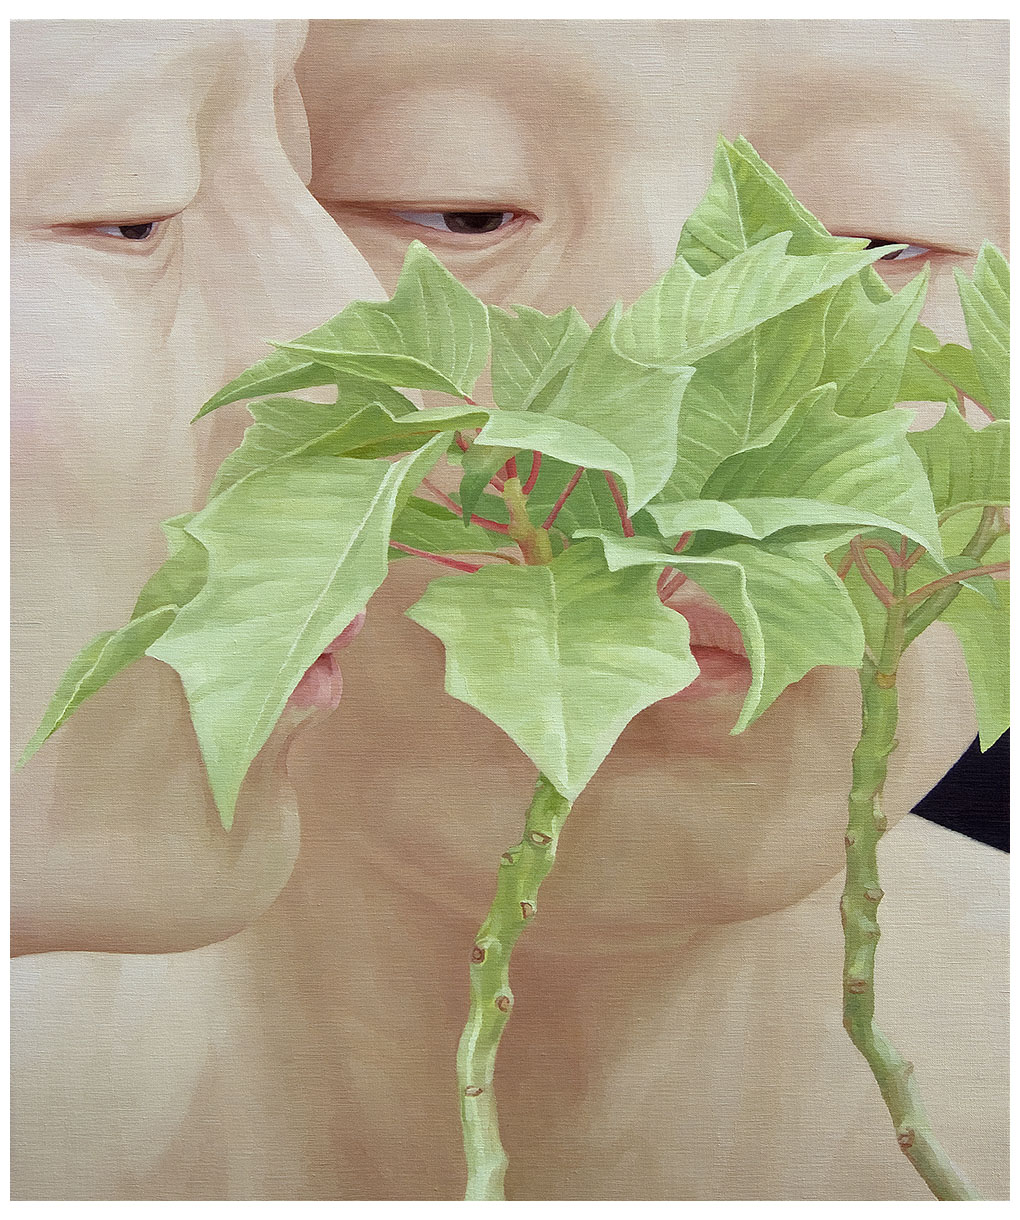 한 사람으로서의 자화상-입맞춤5  90 x 75cm oil on canvas 2012.jpg